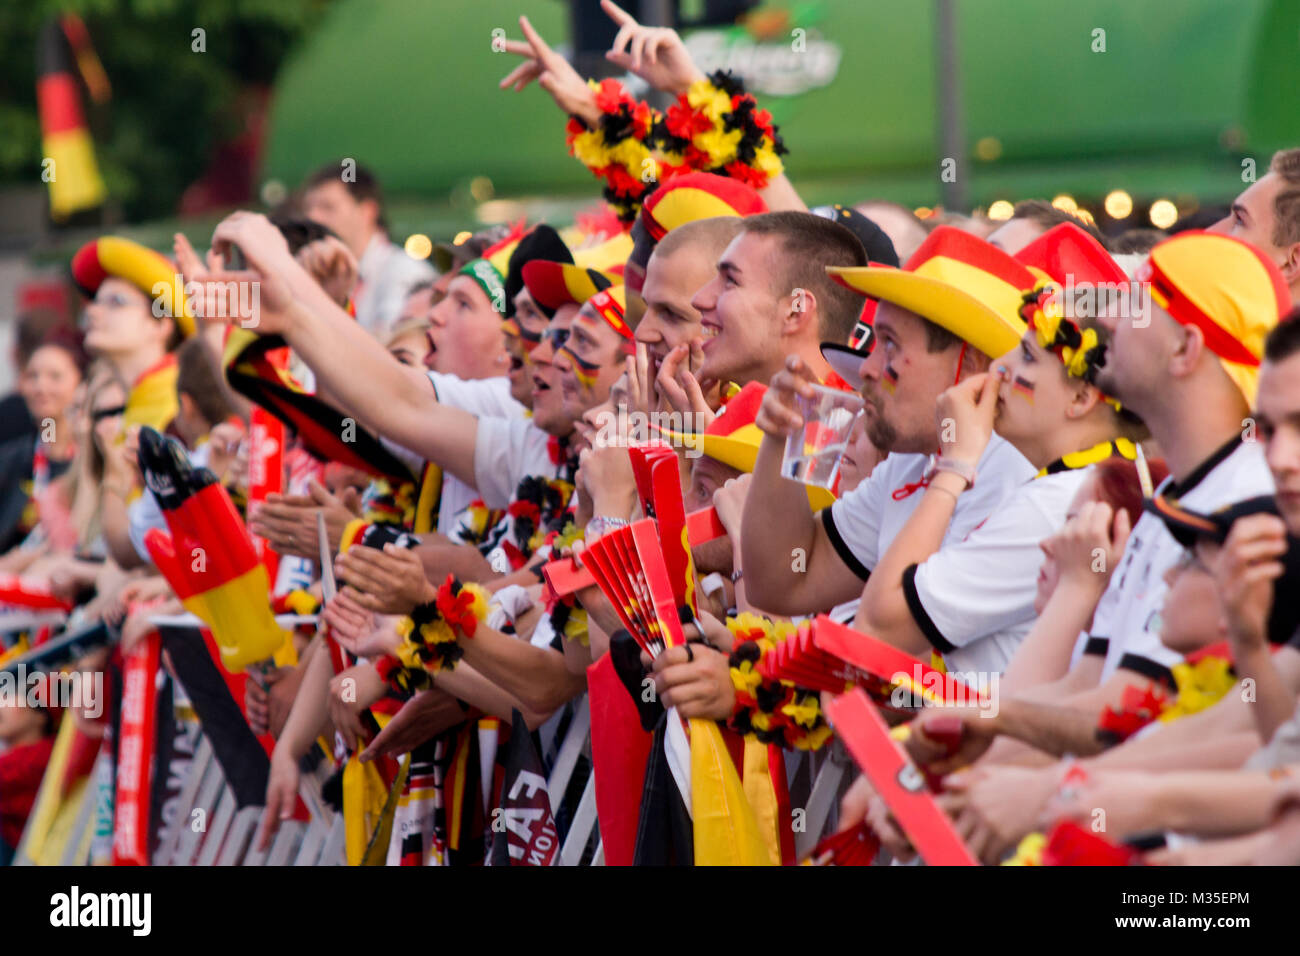 Fussbalfans fiebern mit der deutschen Manschaft auf der Fanmeile zur Europameisterschaft 2012 Deutschland gegen Griechenland am Brandenburger Tor in Berlin Foto Stock